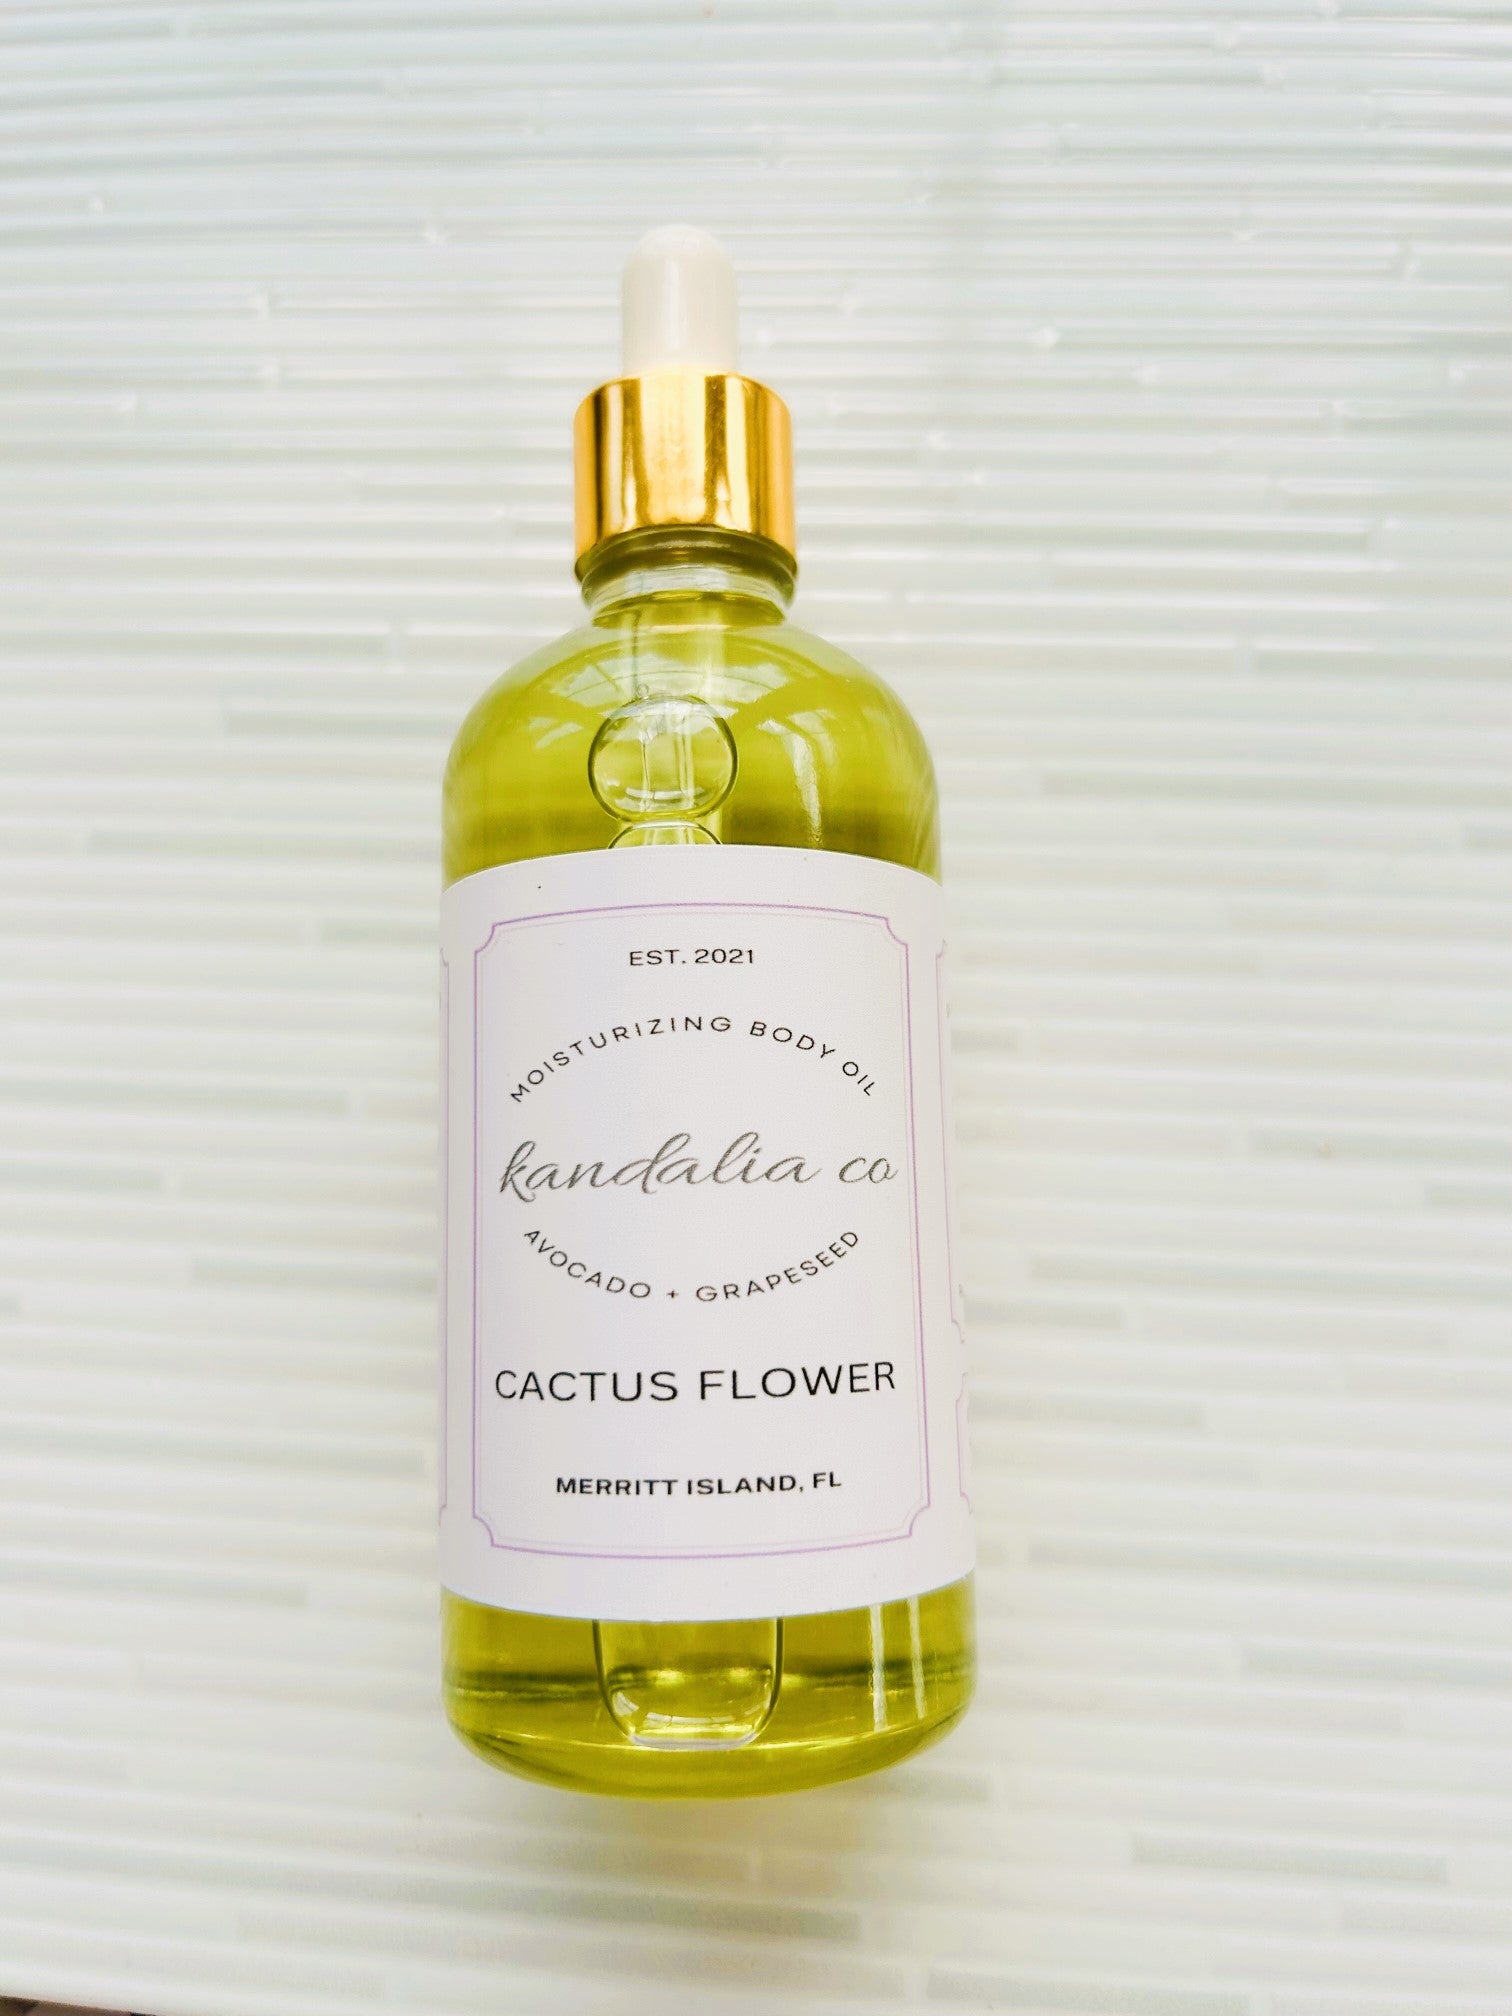 CACTUS FLOWER MOISTURIZING BODY OIL